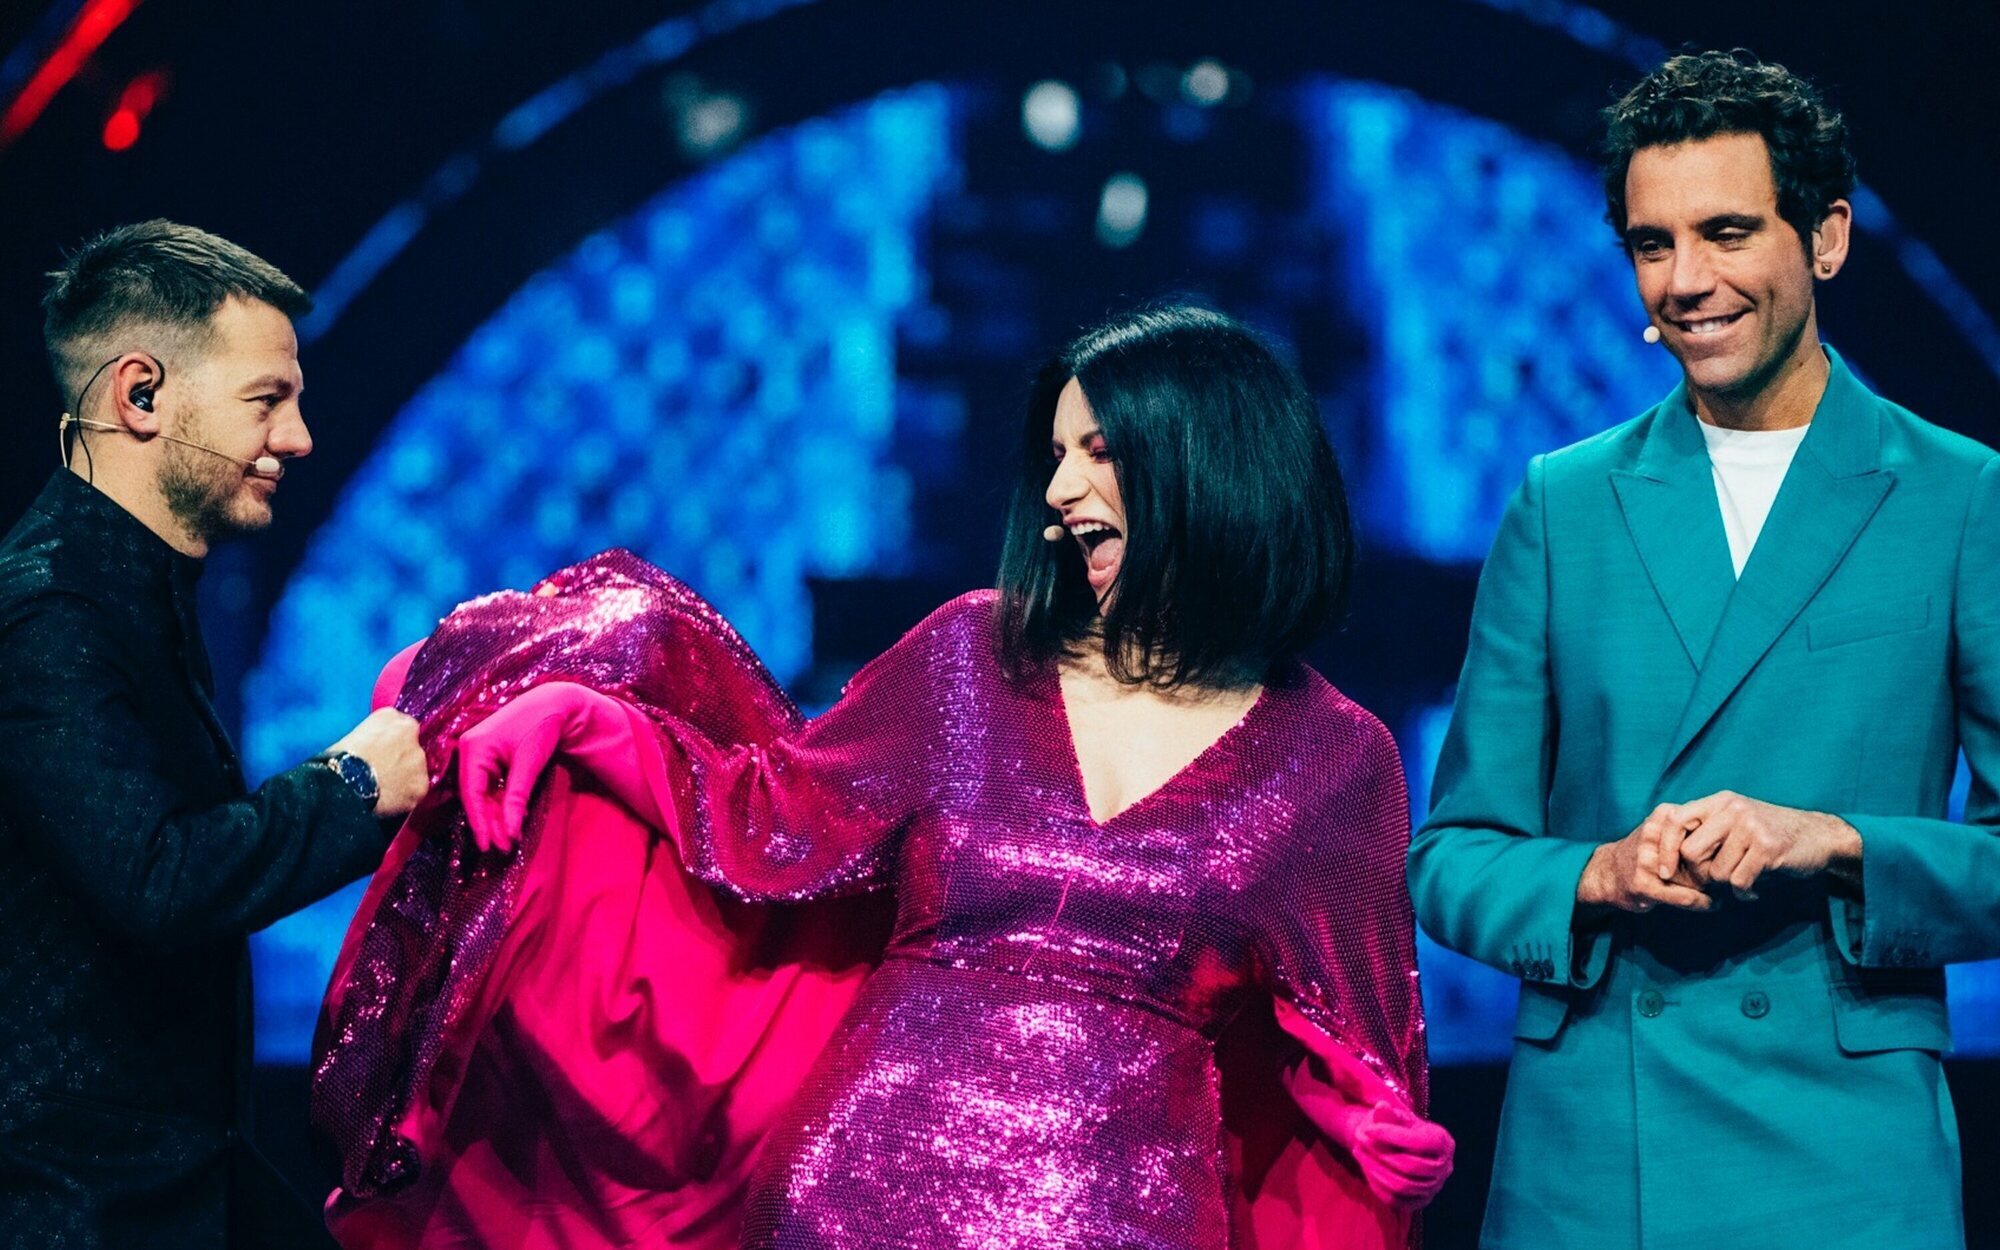 El divertido lapsus de Laura Pausini con el inglés que acaba con un "porca vacca" en Eurovisión 2022